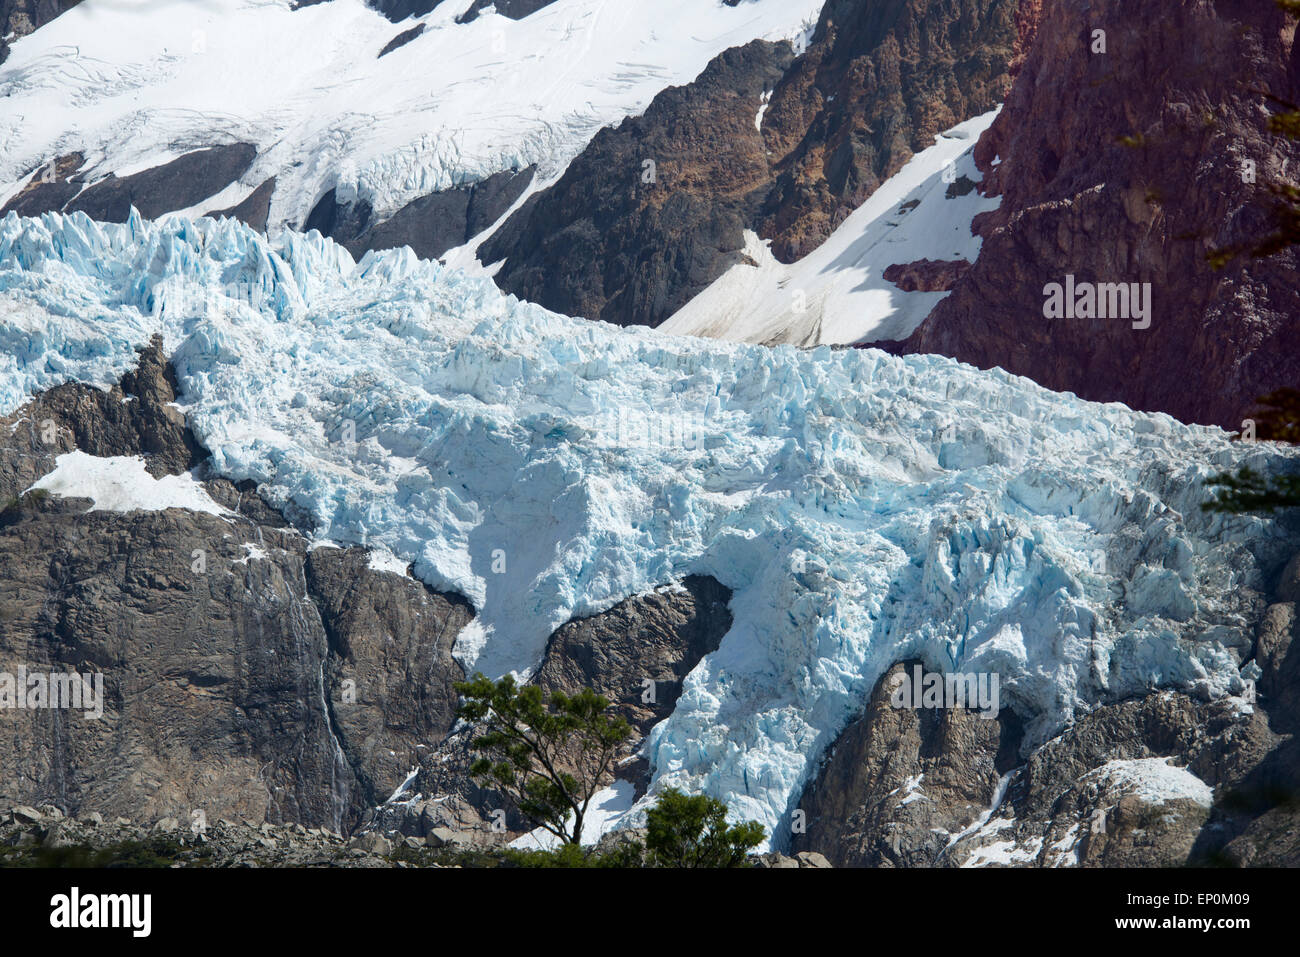 Piedras Blancas Glacier  Mount Fitz Roy Range Los Glaciares National Park Patagonia Argentina Stock Photo